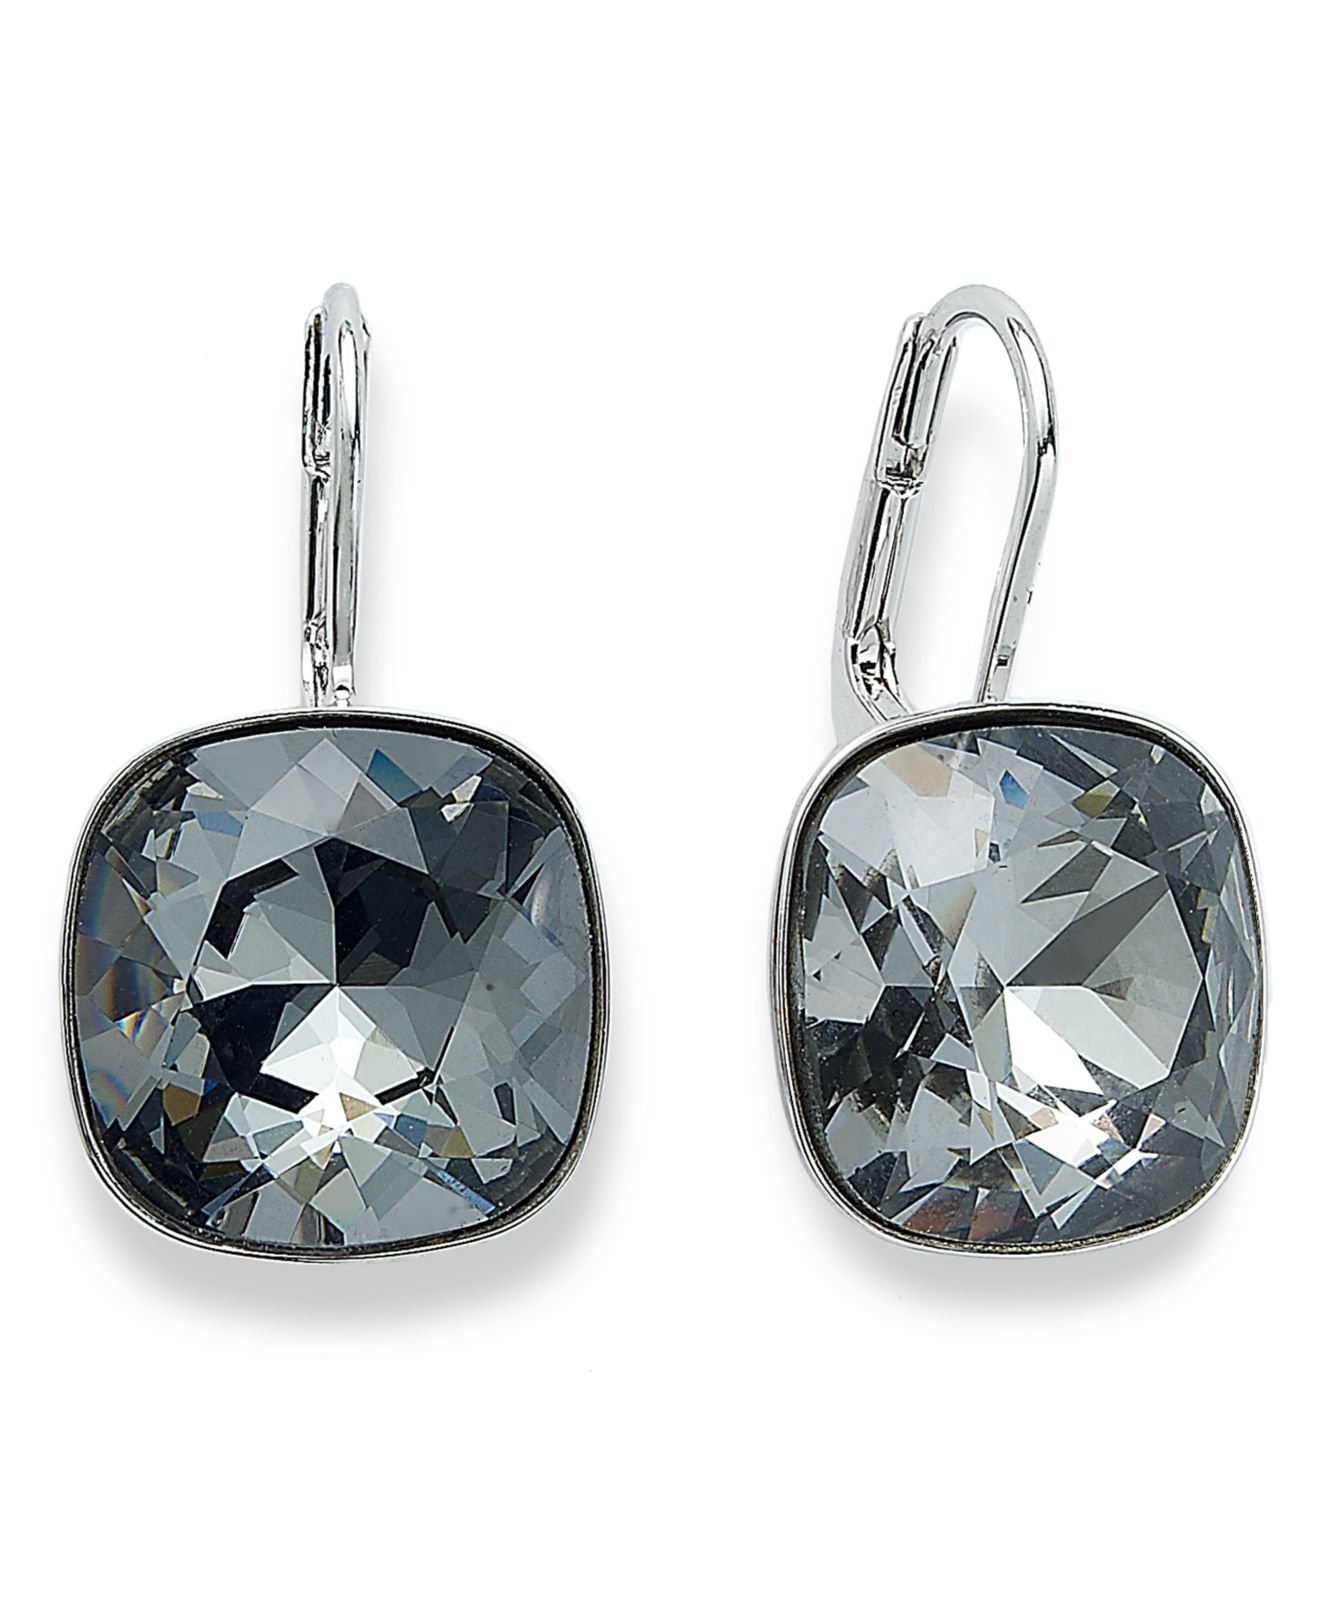 Lyst - Swarovski Earrings, Silver-tone Crystal Drop Earrings in Metallic